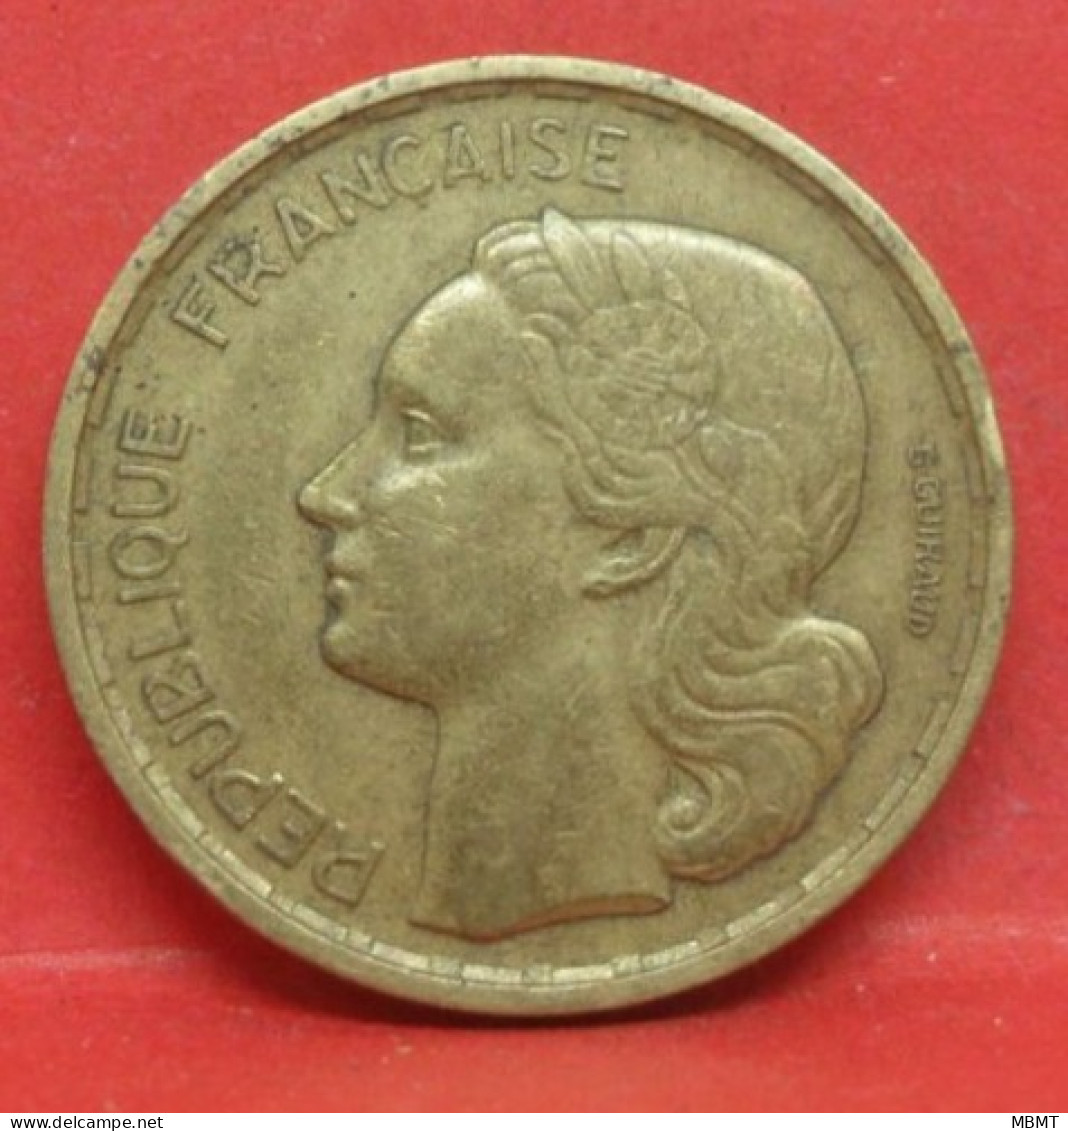 20 Francs G Guiraud 1950 4 Faucilles - TB - Pièce Monnaie France - Article N°984 - 20 Francs